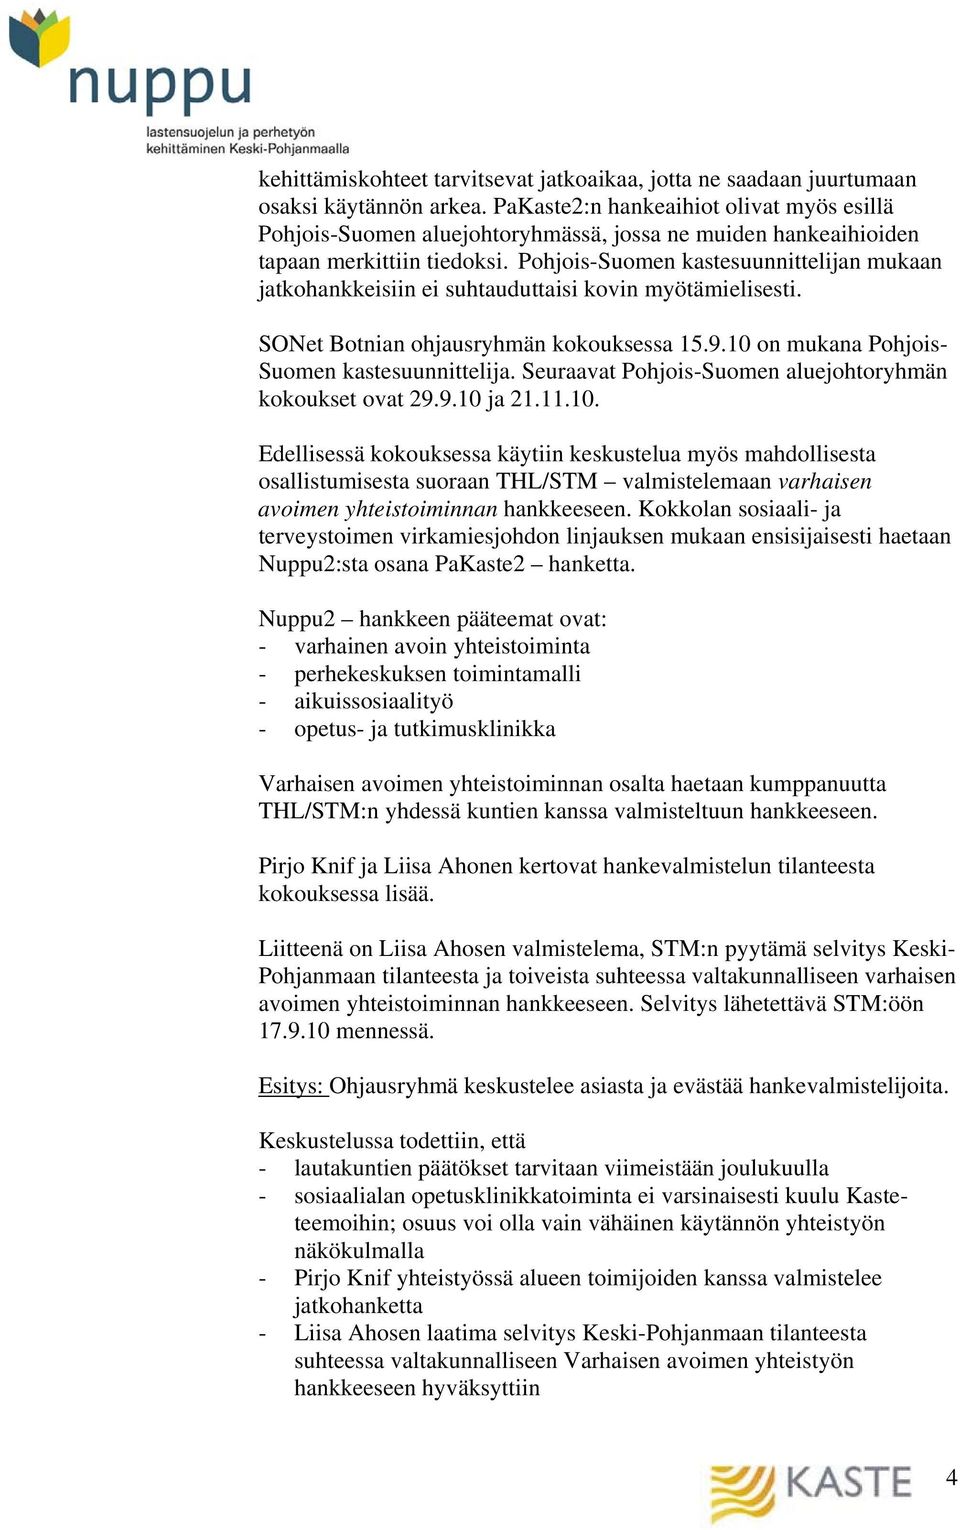 Pohjois-Suomen kastesuunnittelijan mukaan jatkohankkeisiin ei suhtauduttaisi kovin myötämielisesti. SONet Botnian ohjausryhmän kokouksessa 15.9.10 on mukana Pohjois- Suomen kastesuunnittelija.